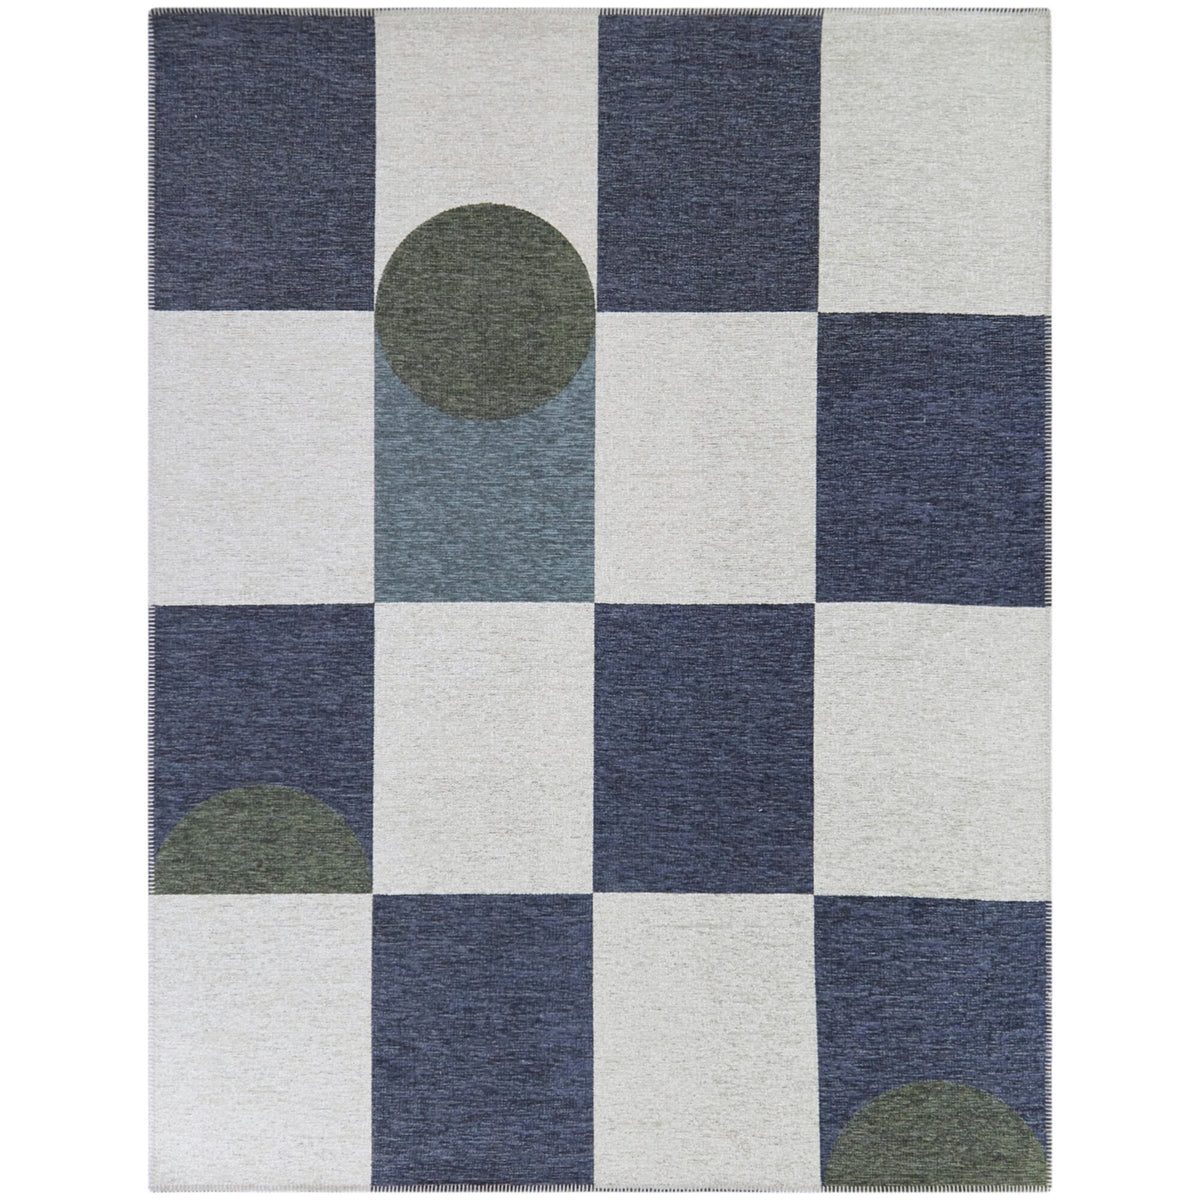 Efraim Abstract Checkered Area Rug